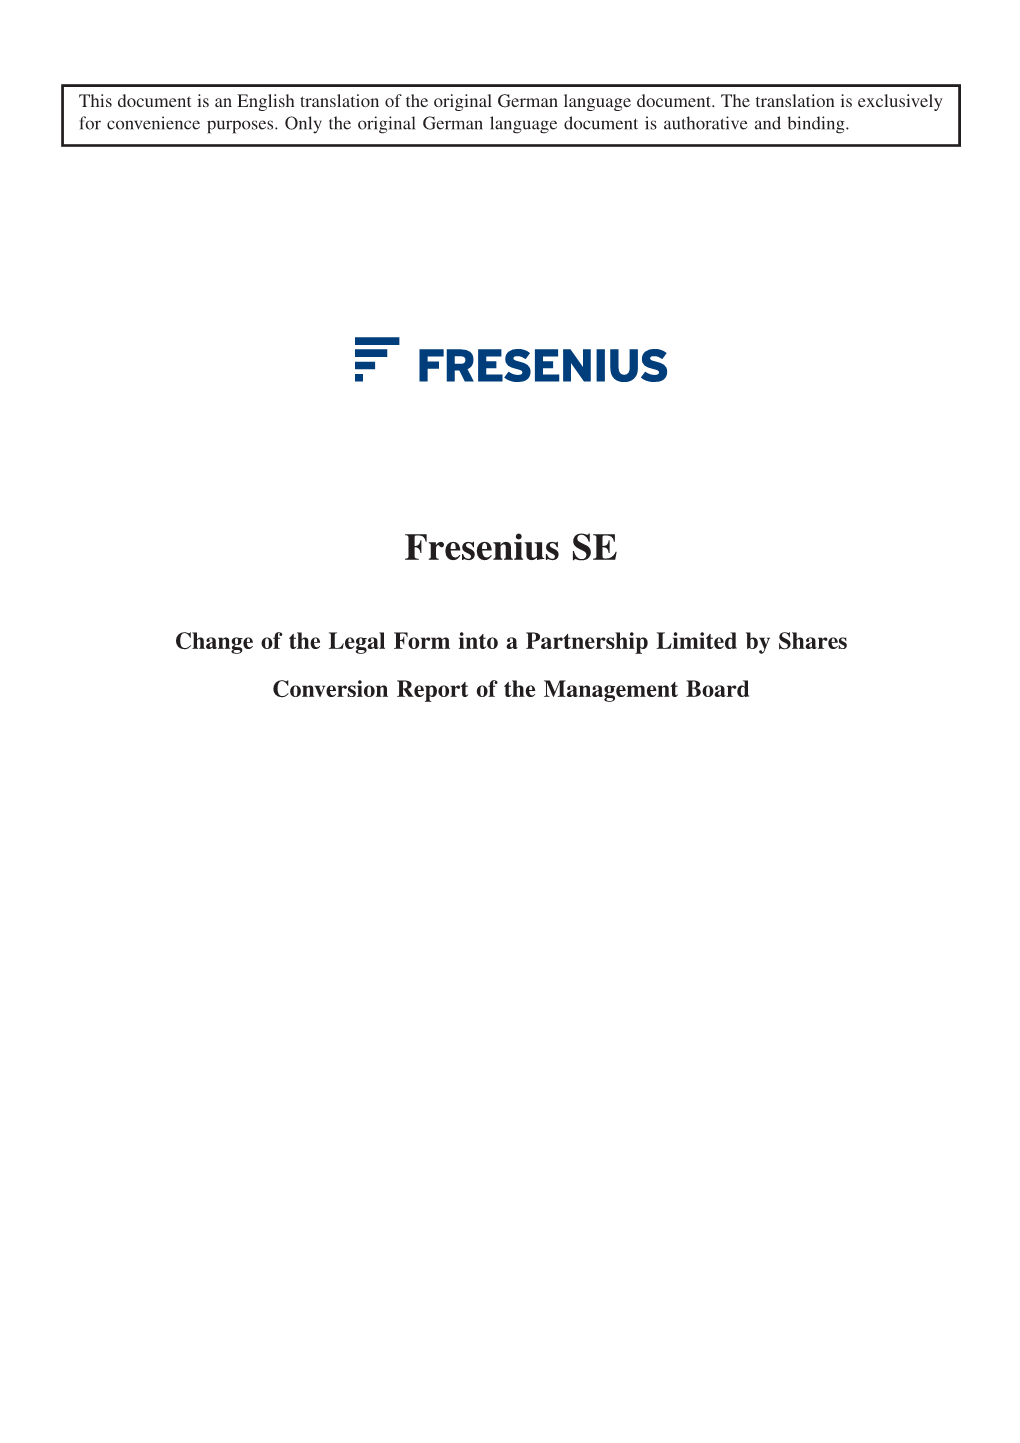 Conversion Report (PDF, 958